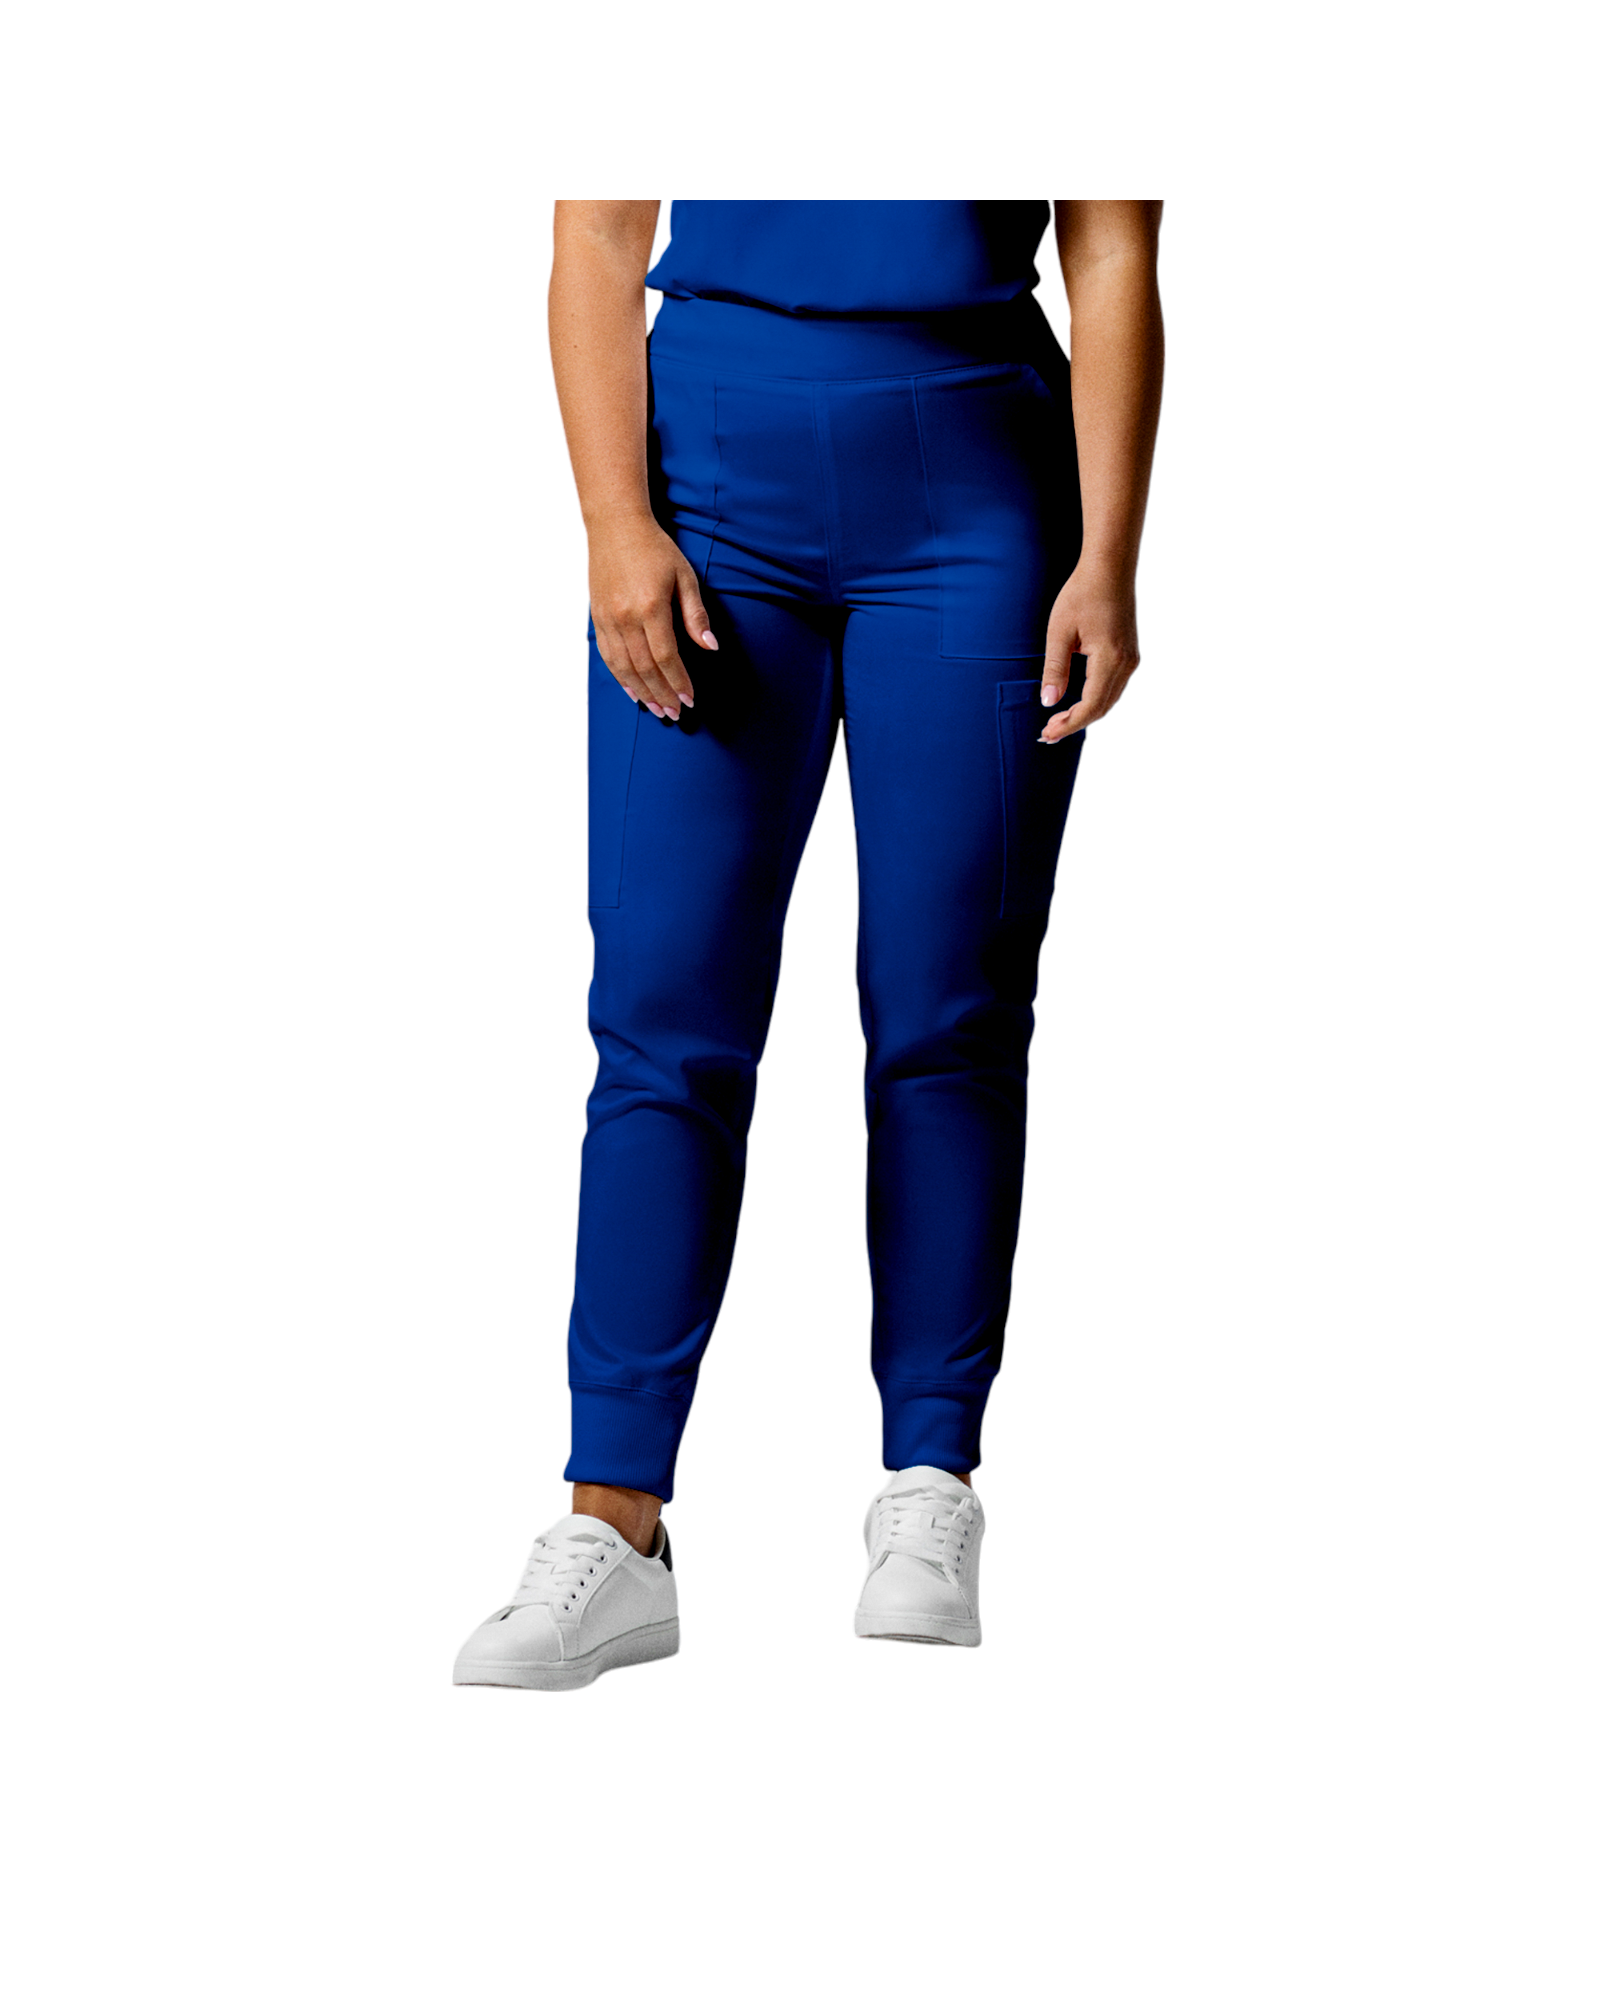 Pantalon de style jogger 6 poches pour femmes Landau Proflex #LB406-OS couleur Bleu galaxie